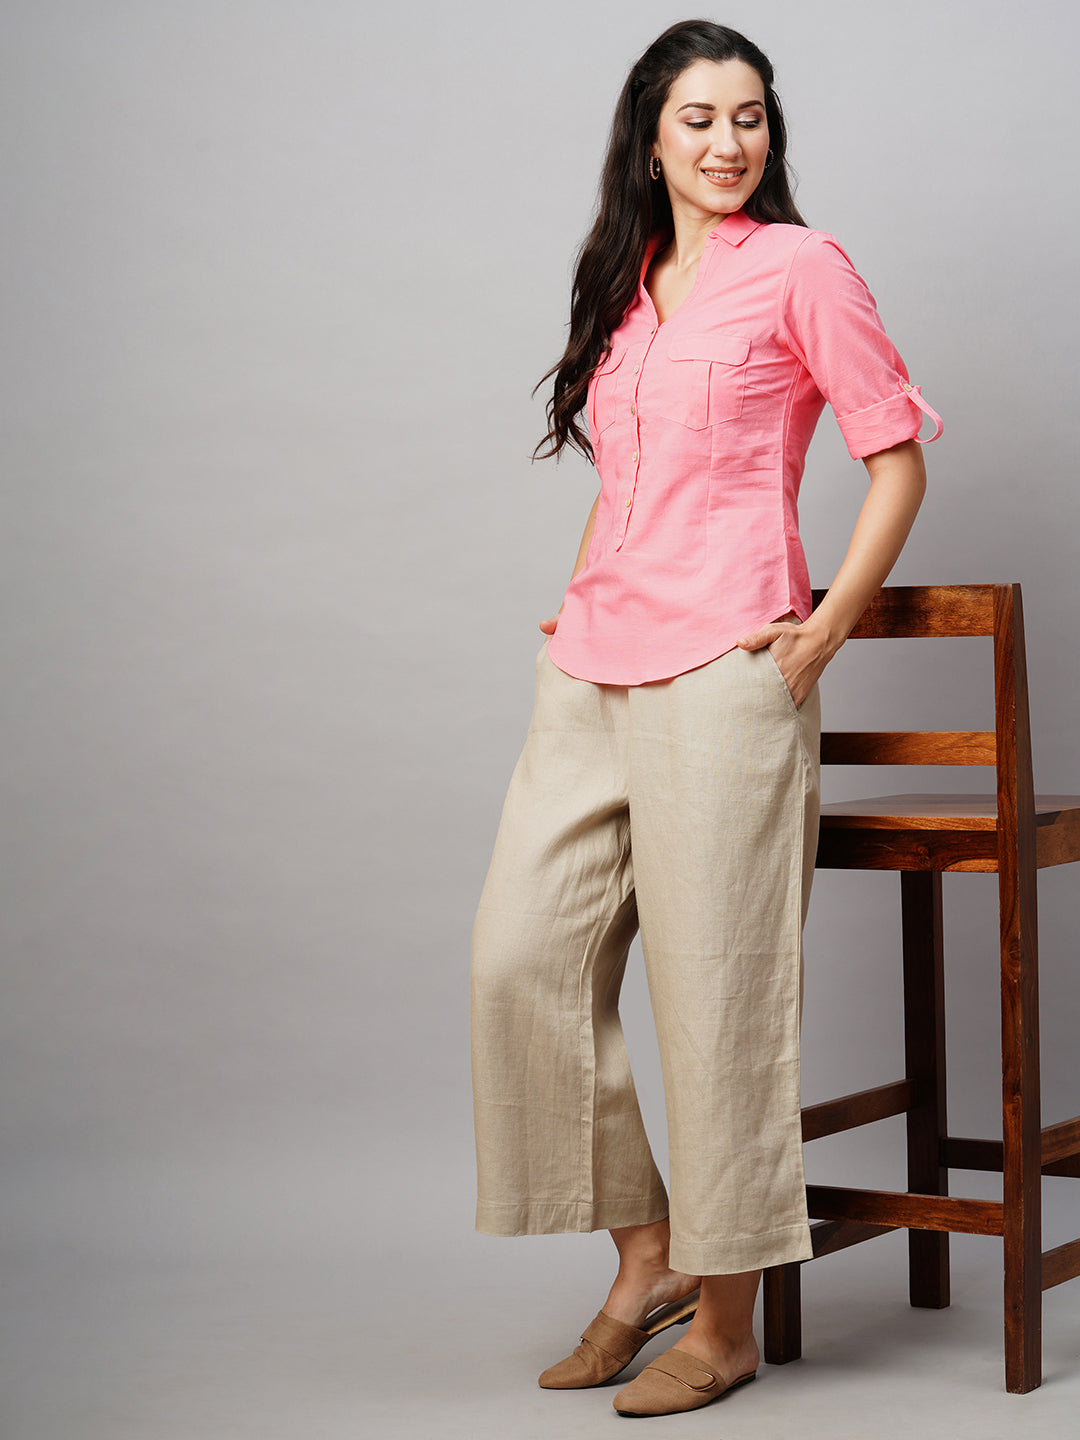 Women's Linen Cotton Pink Regular Fit Blouse